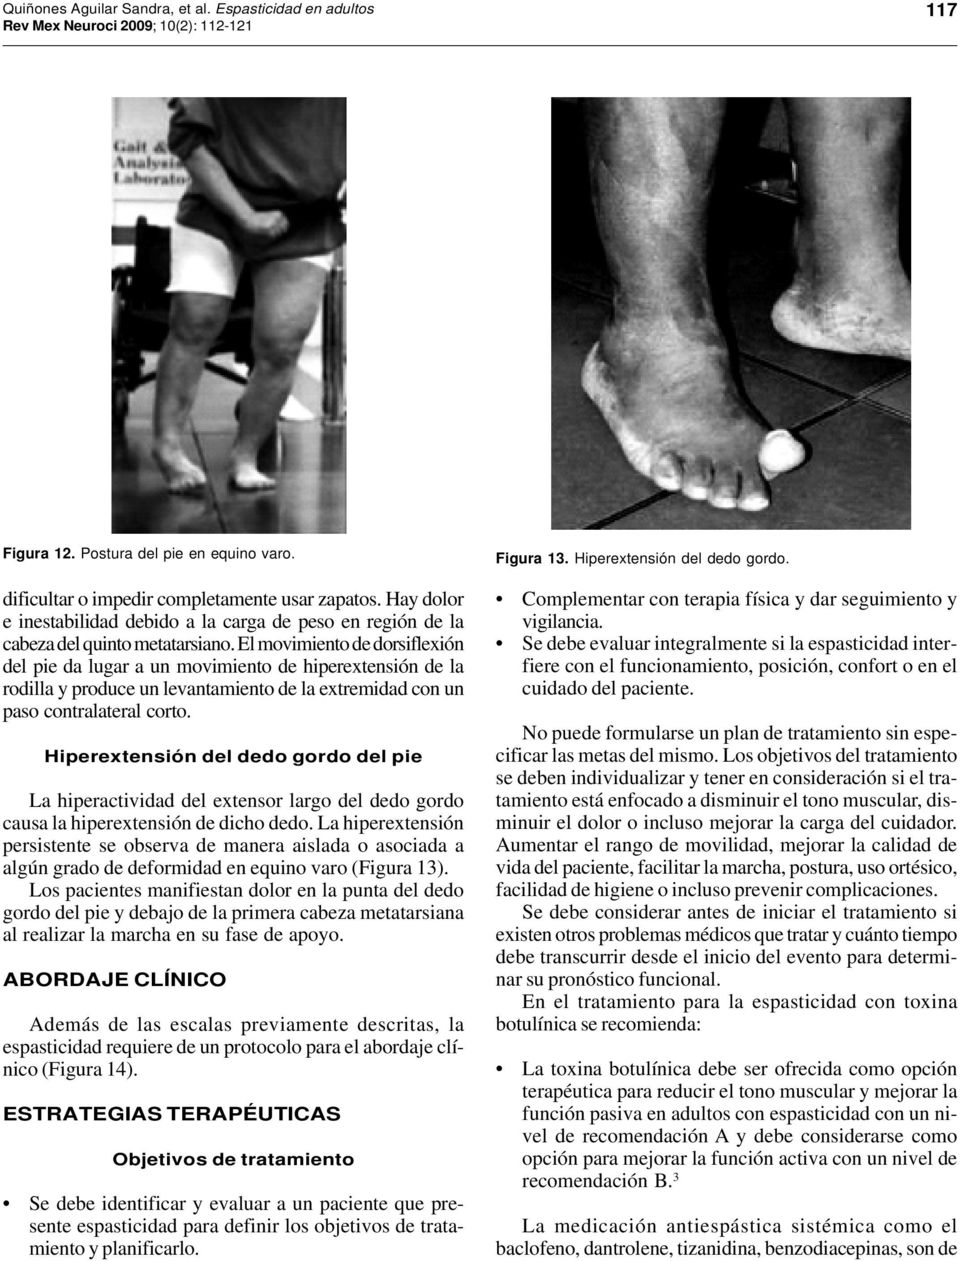 El movimiento de dorsiflexión del pie da lugar a un movimiento de hiperextensión de la rodilla y produce un levantamiento de la extremidad con un paso contralateral corto.